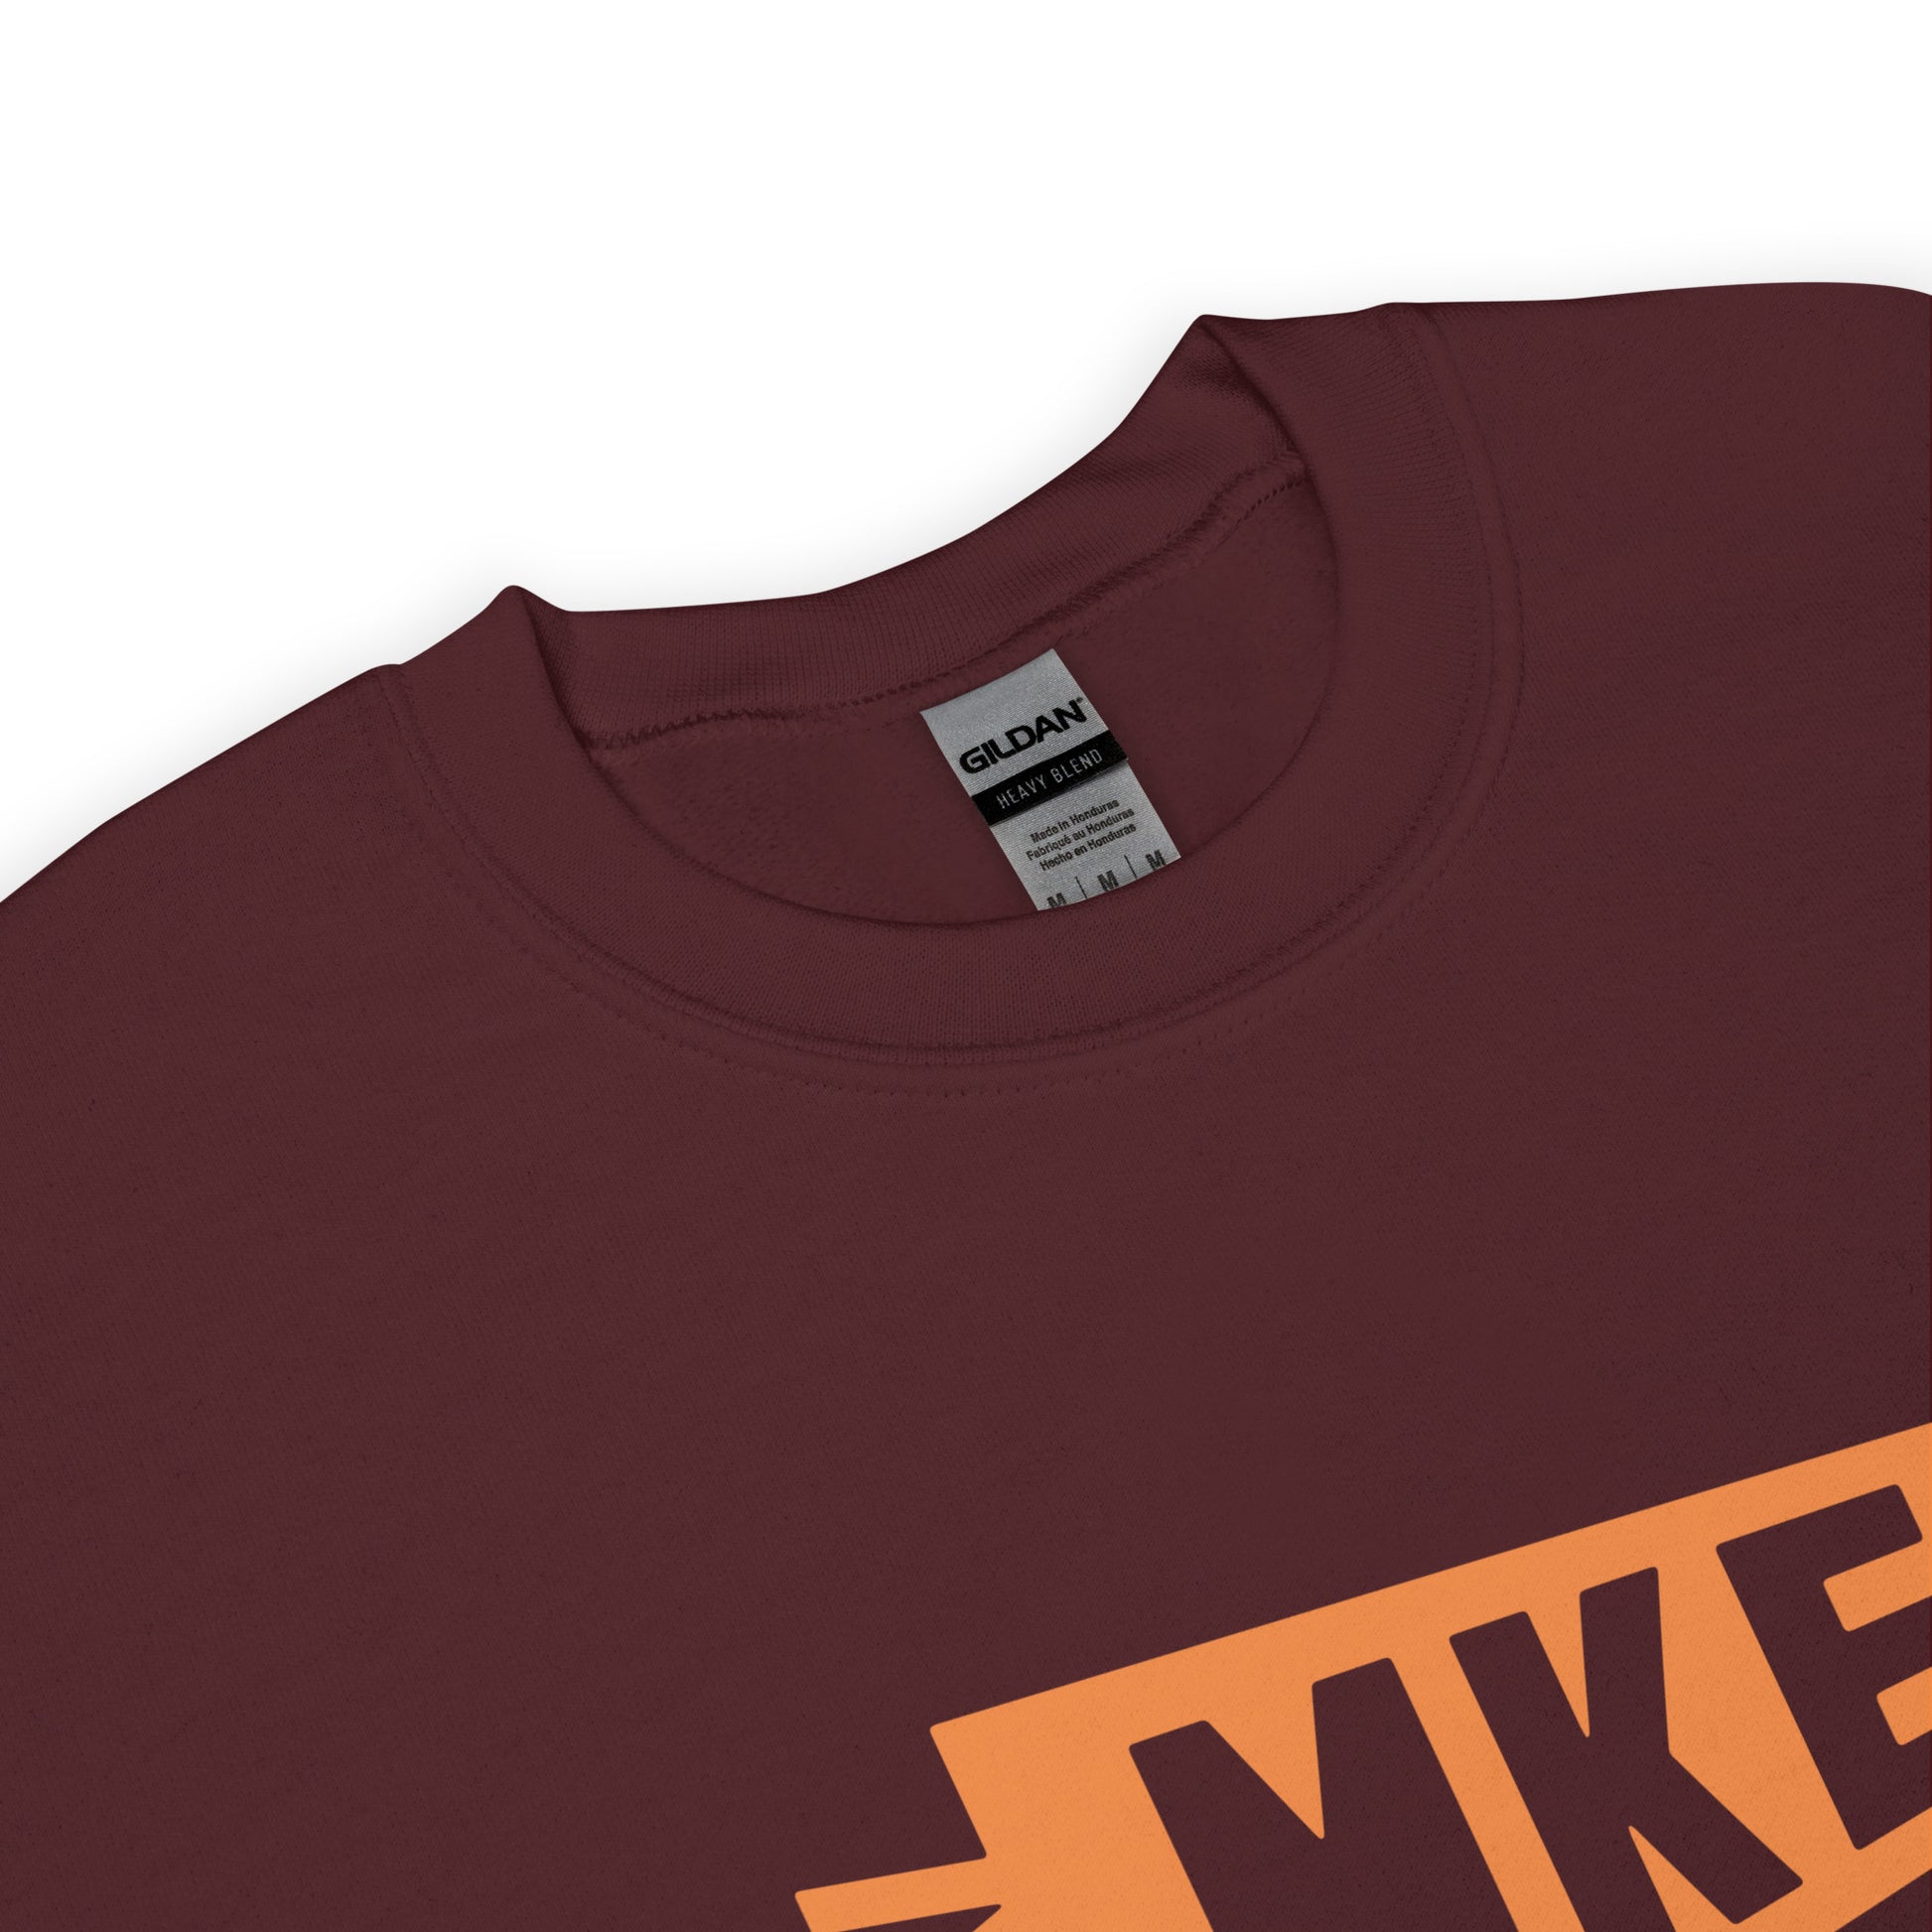 Airport Code Sweatshirt - Orange Graphic • MKE Milwaukee • YHM Designs - Image 04